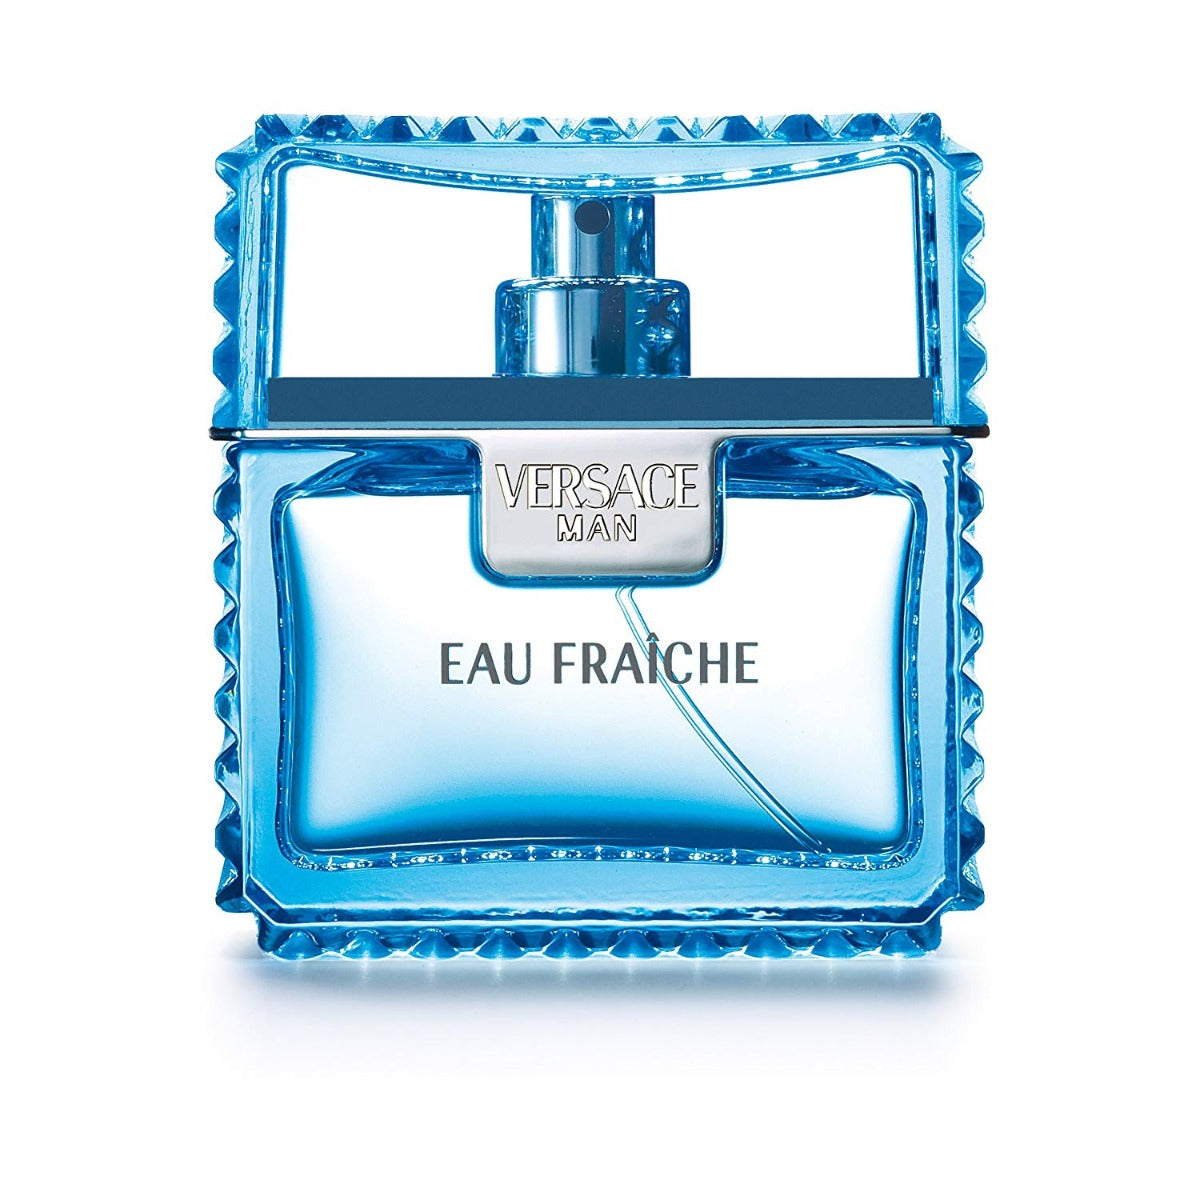 VERSACE MAN EAU FRAICHE FOR MEN EDT 50 ml - samawa perfumes 